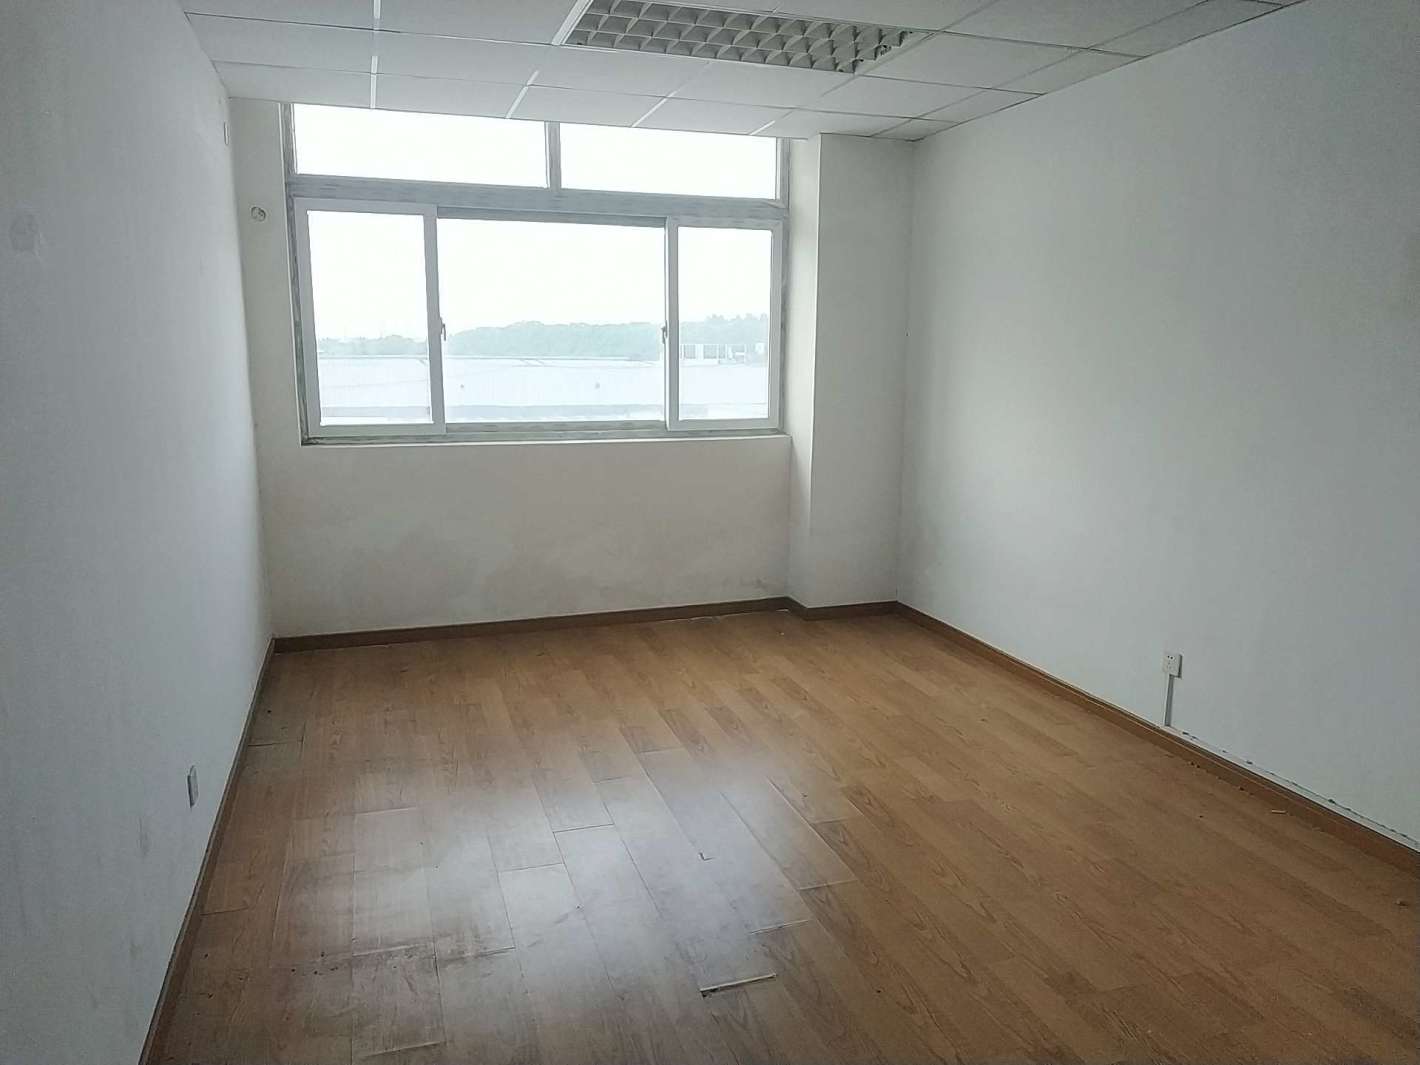 上海环保科技园30平米办公室出租-租金价格2.52元/m²/天